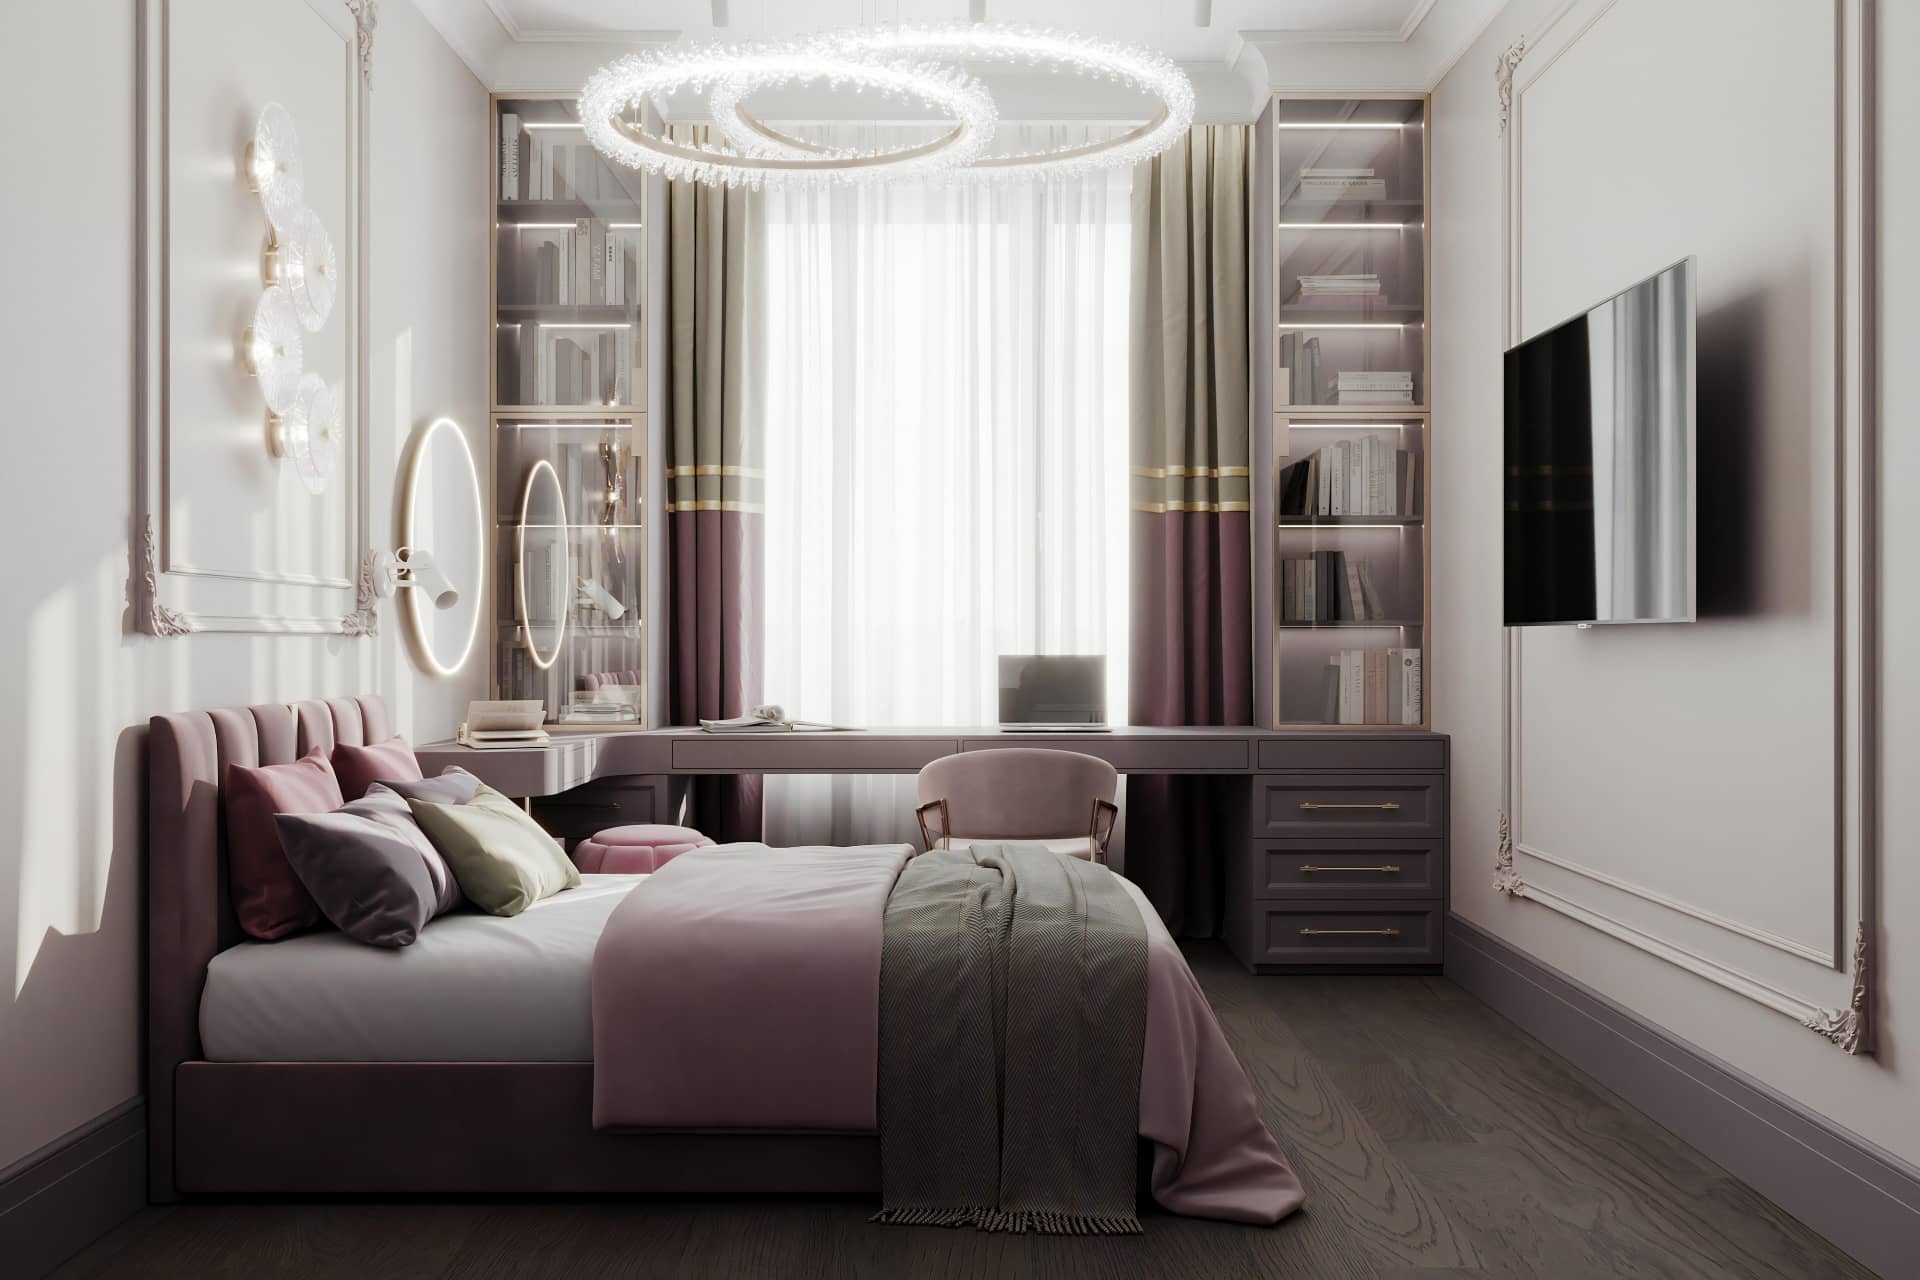 Комната оформлена в пастельных оттенках розового, фиолетового и зелёного